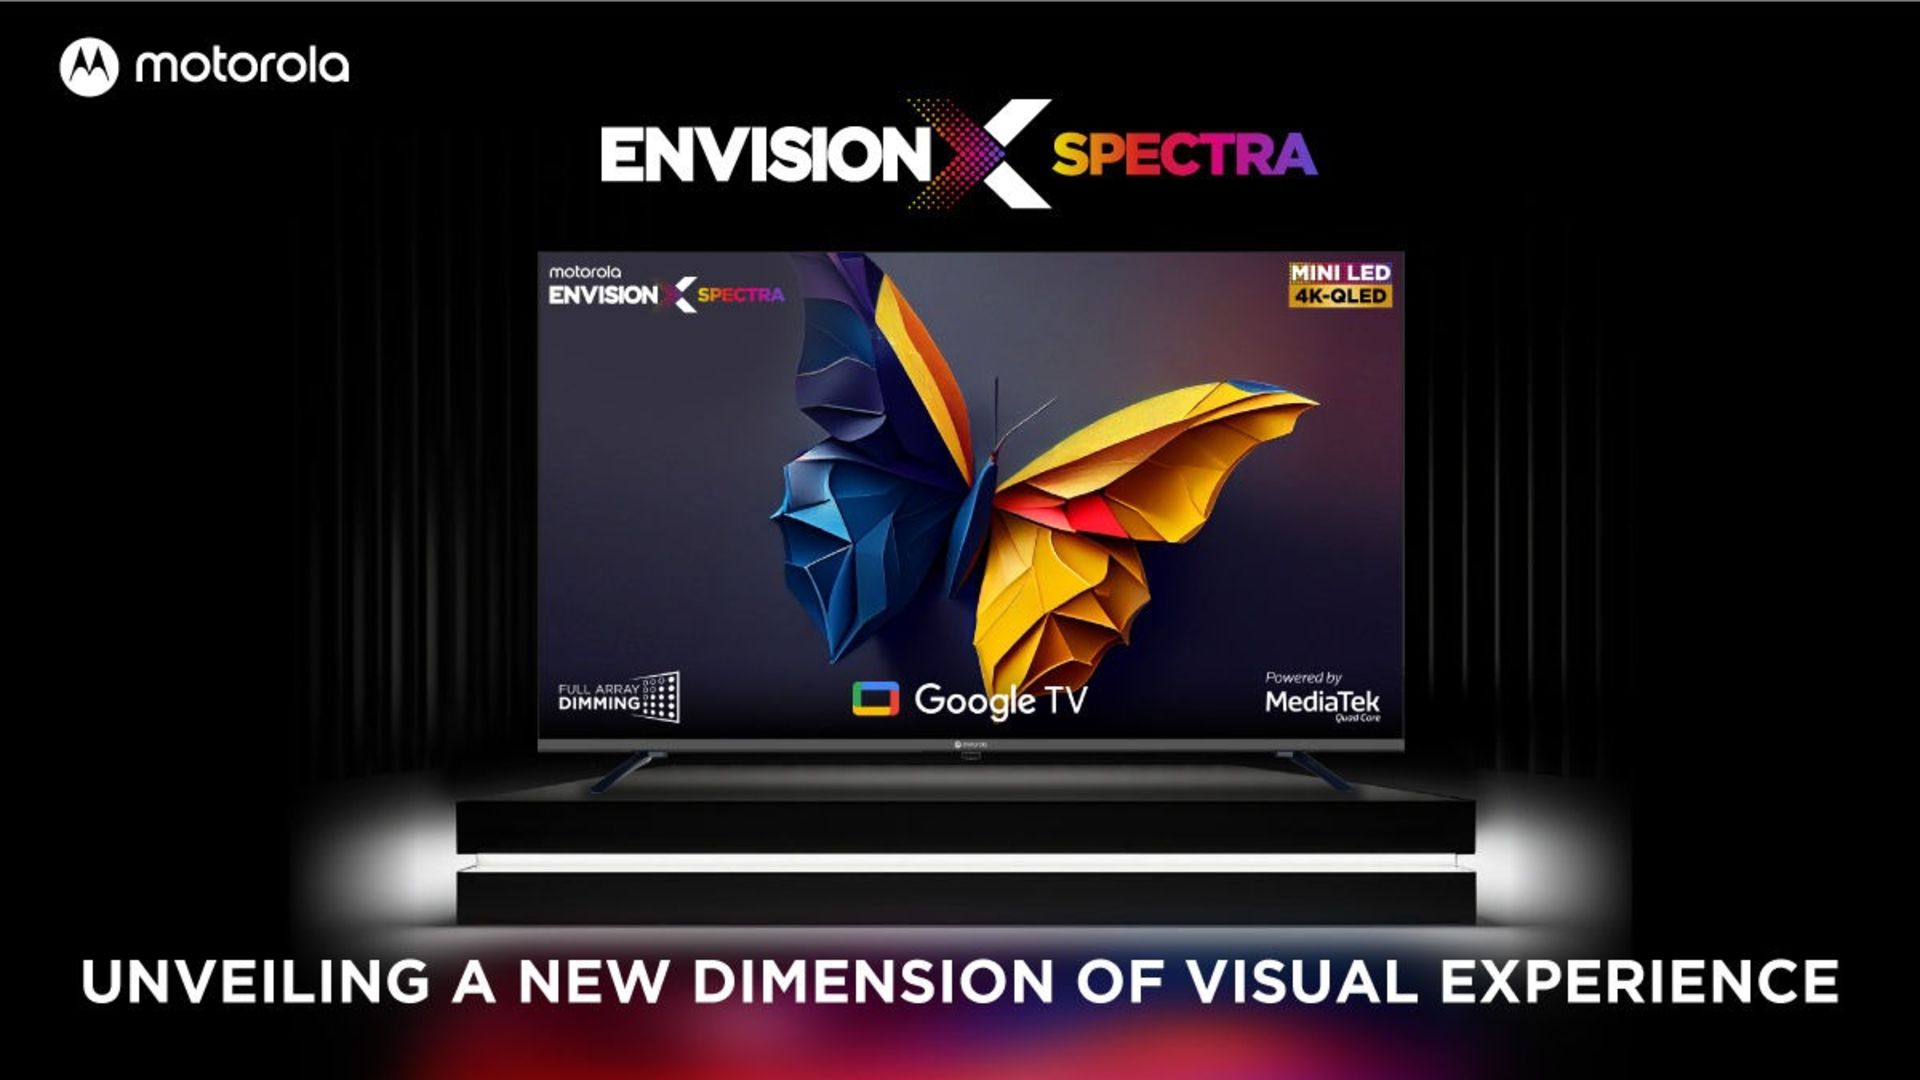 تلویزیون موتورولا EnvisionX Spectra از نمای جلو درحال نمایش پروانه